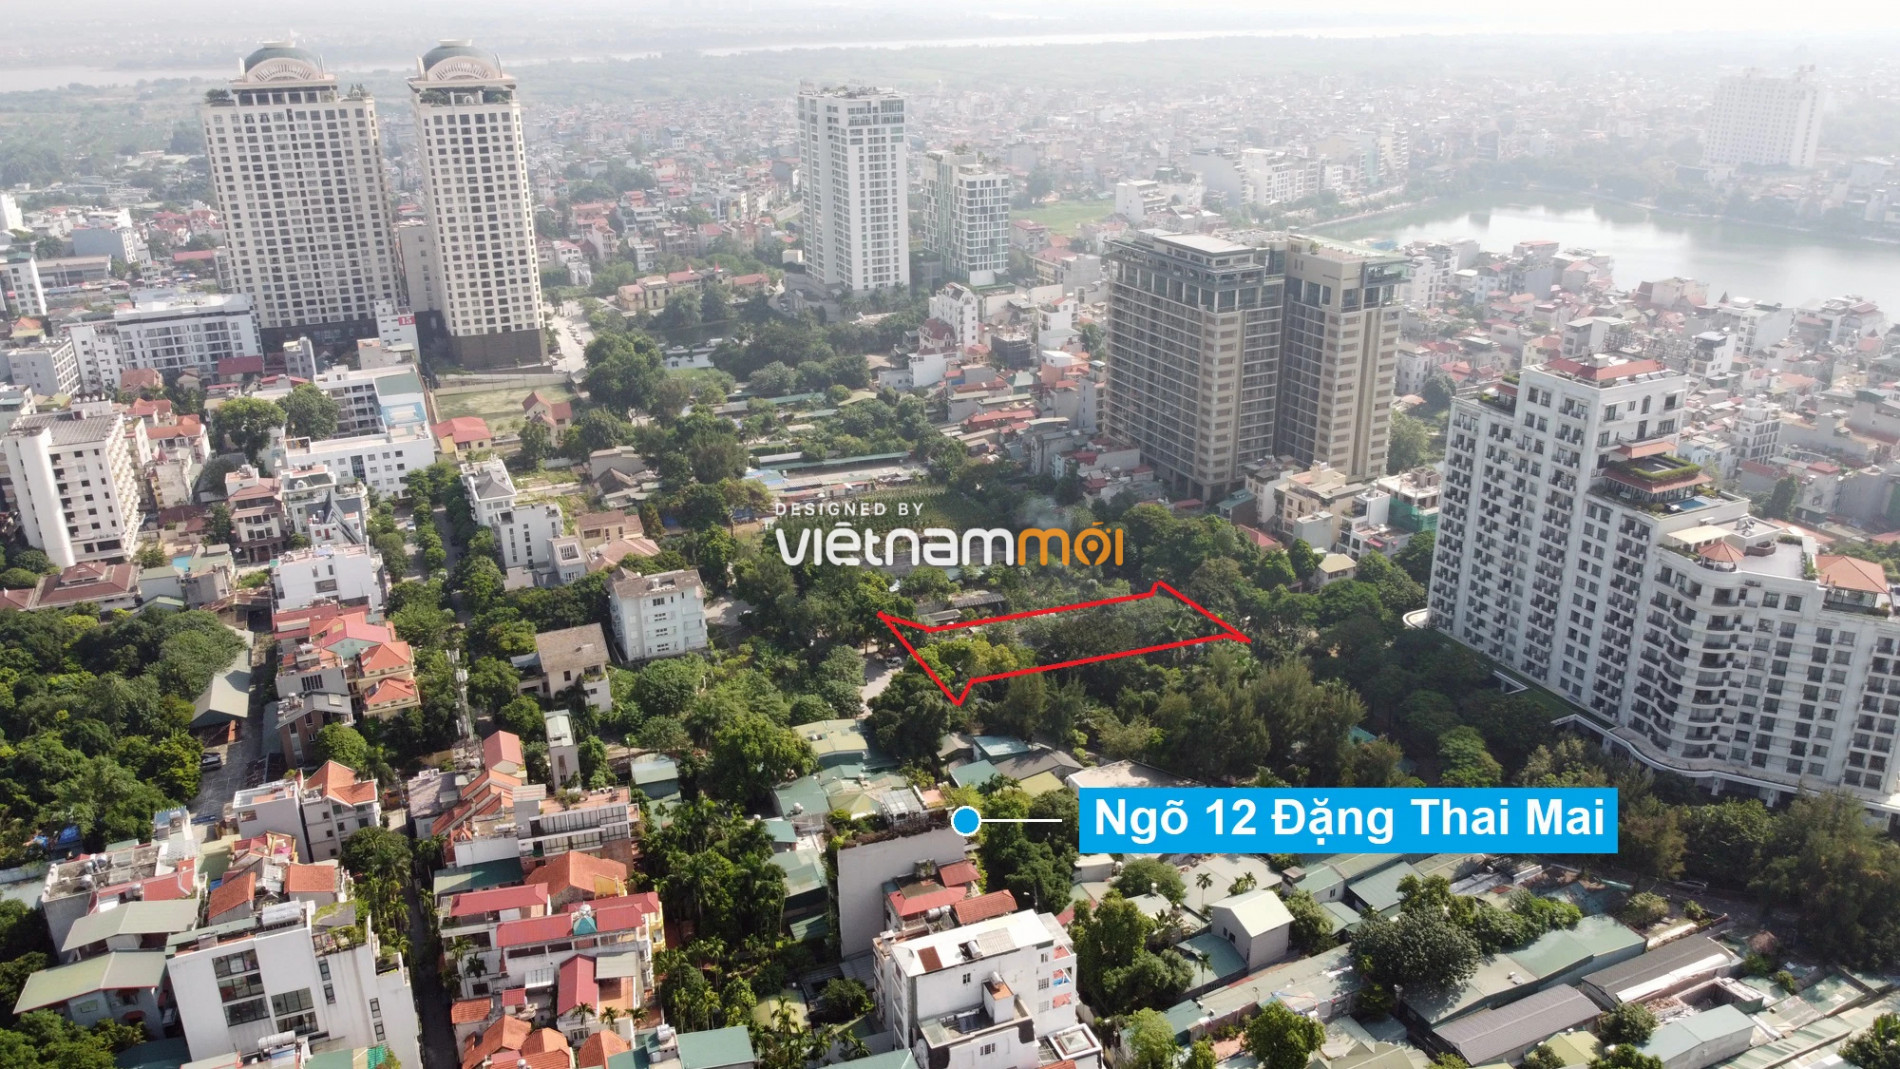 Những khu đất sắp thu hồi để mở đường ở quận Tây Hồ, Hà Nội (phần 5) - Ảnh 16.